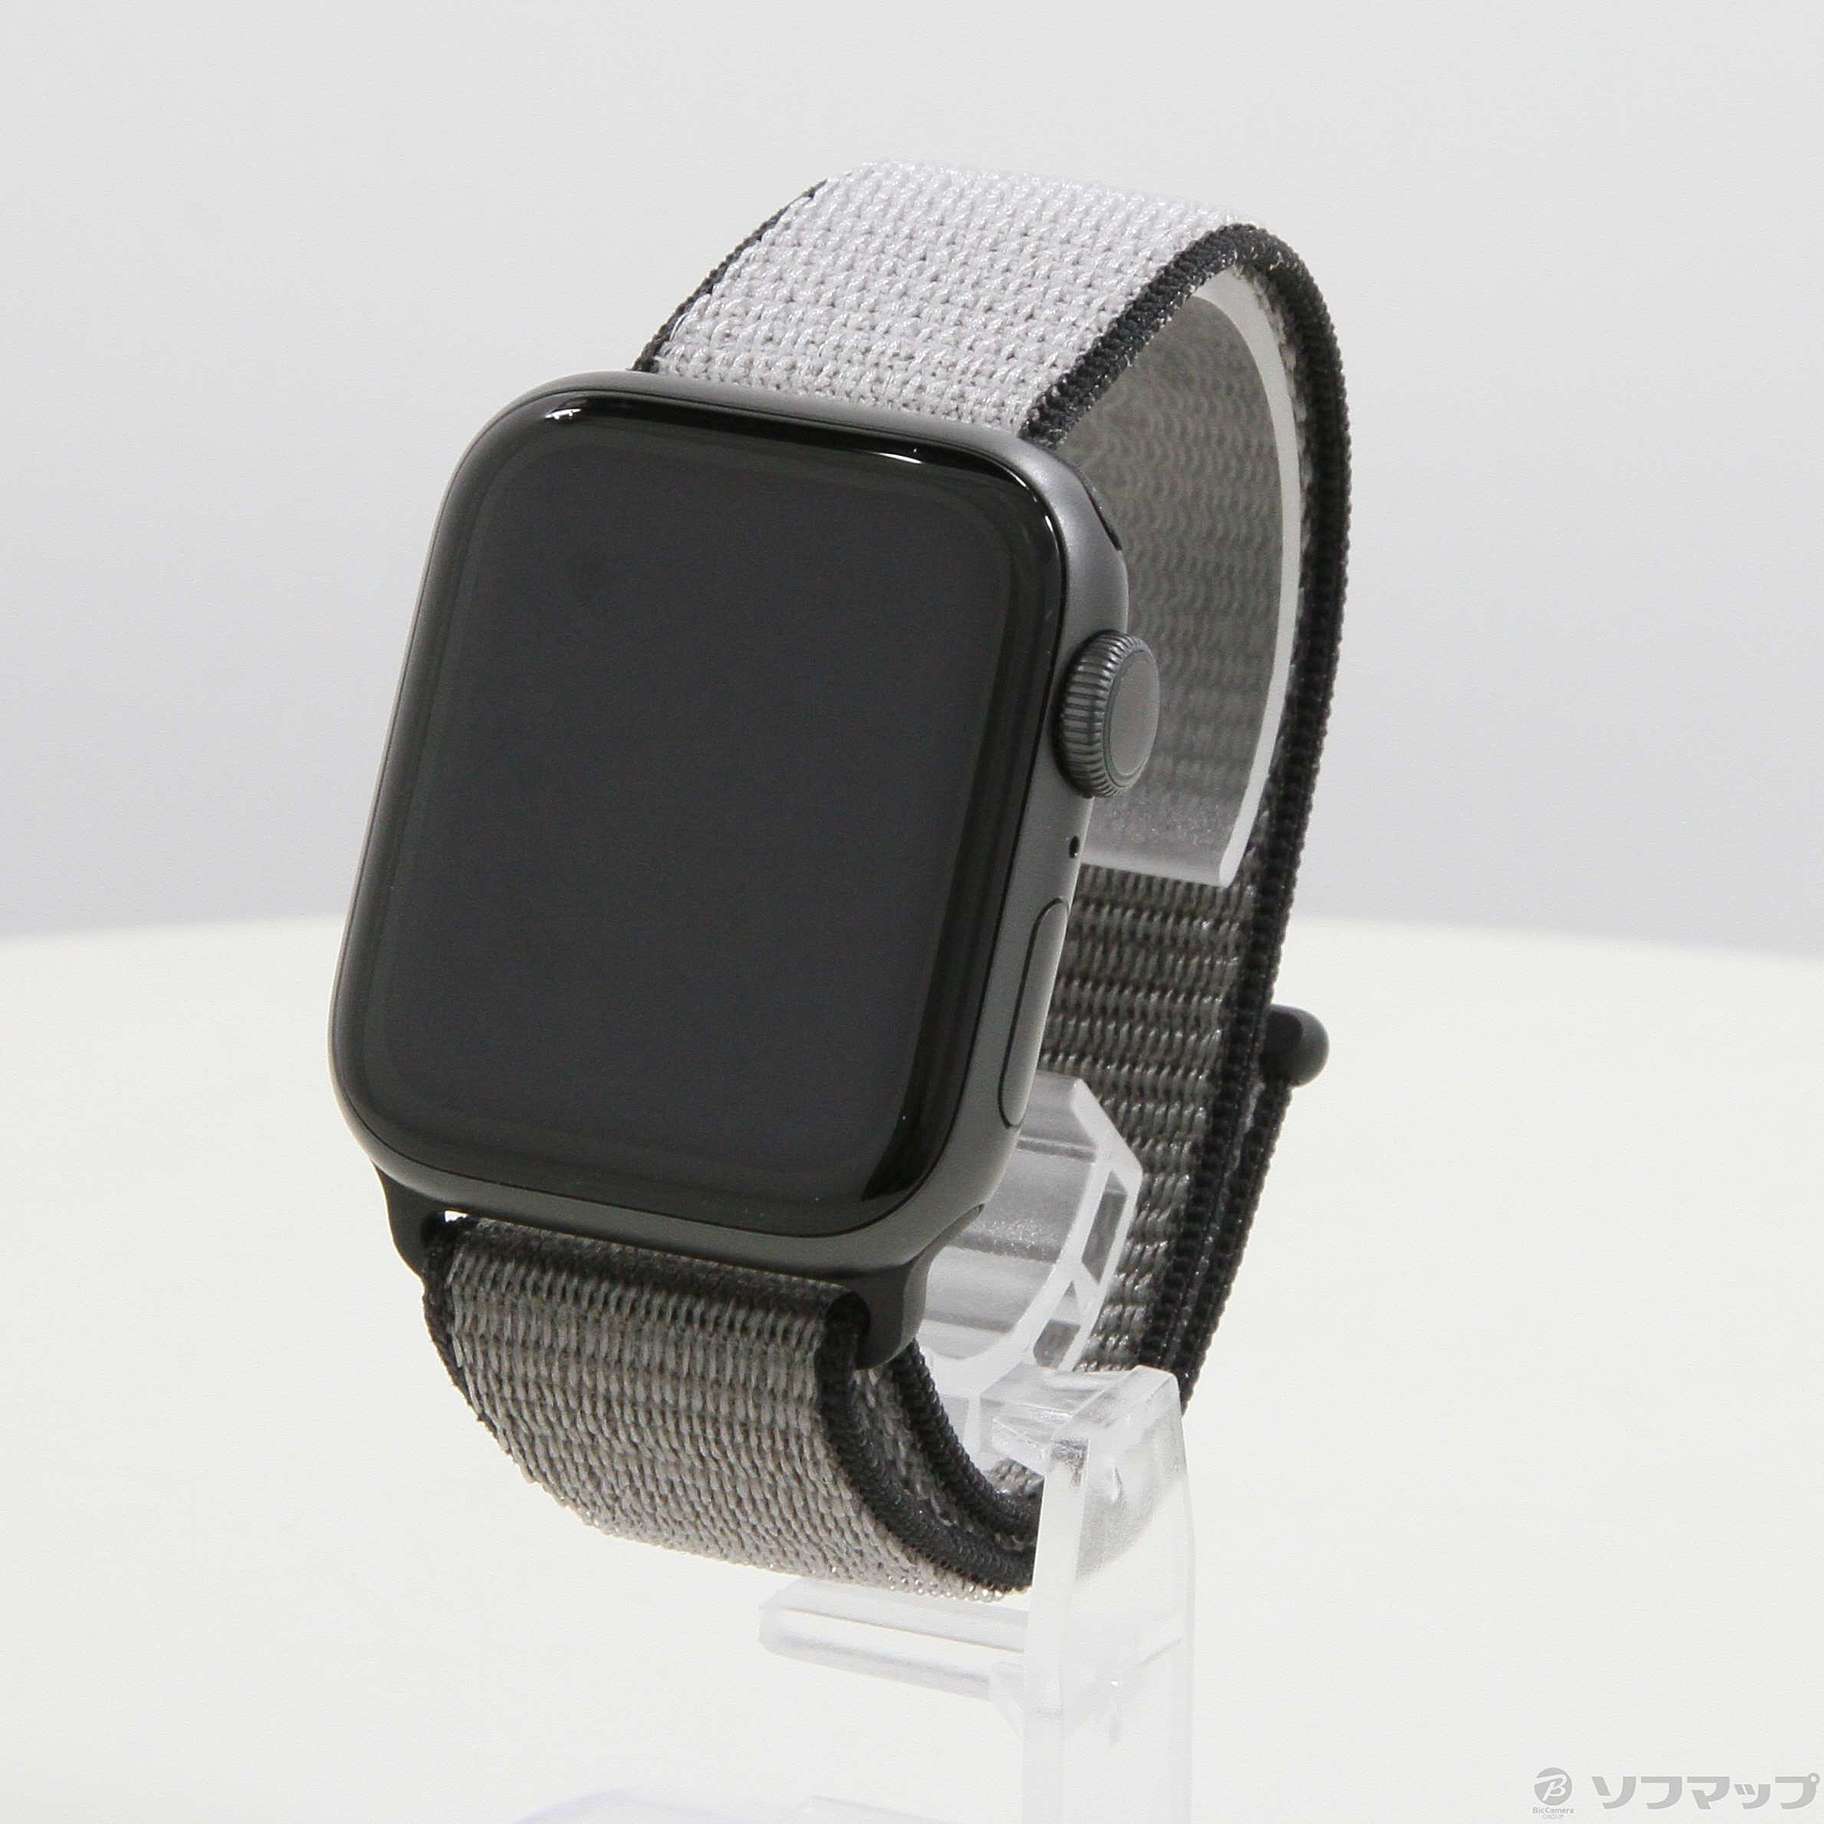 中古】Apple Watch Series 5 GPS 40mm スペースグレイアルミニウム